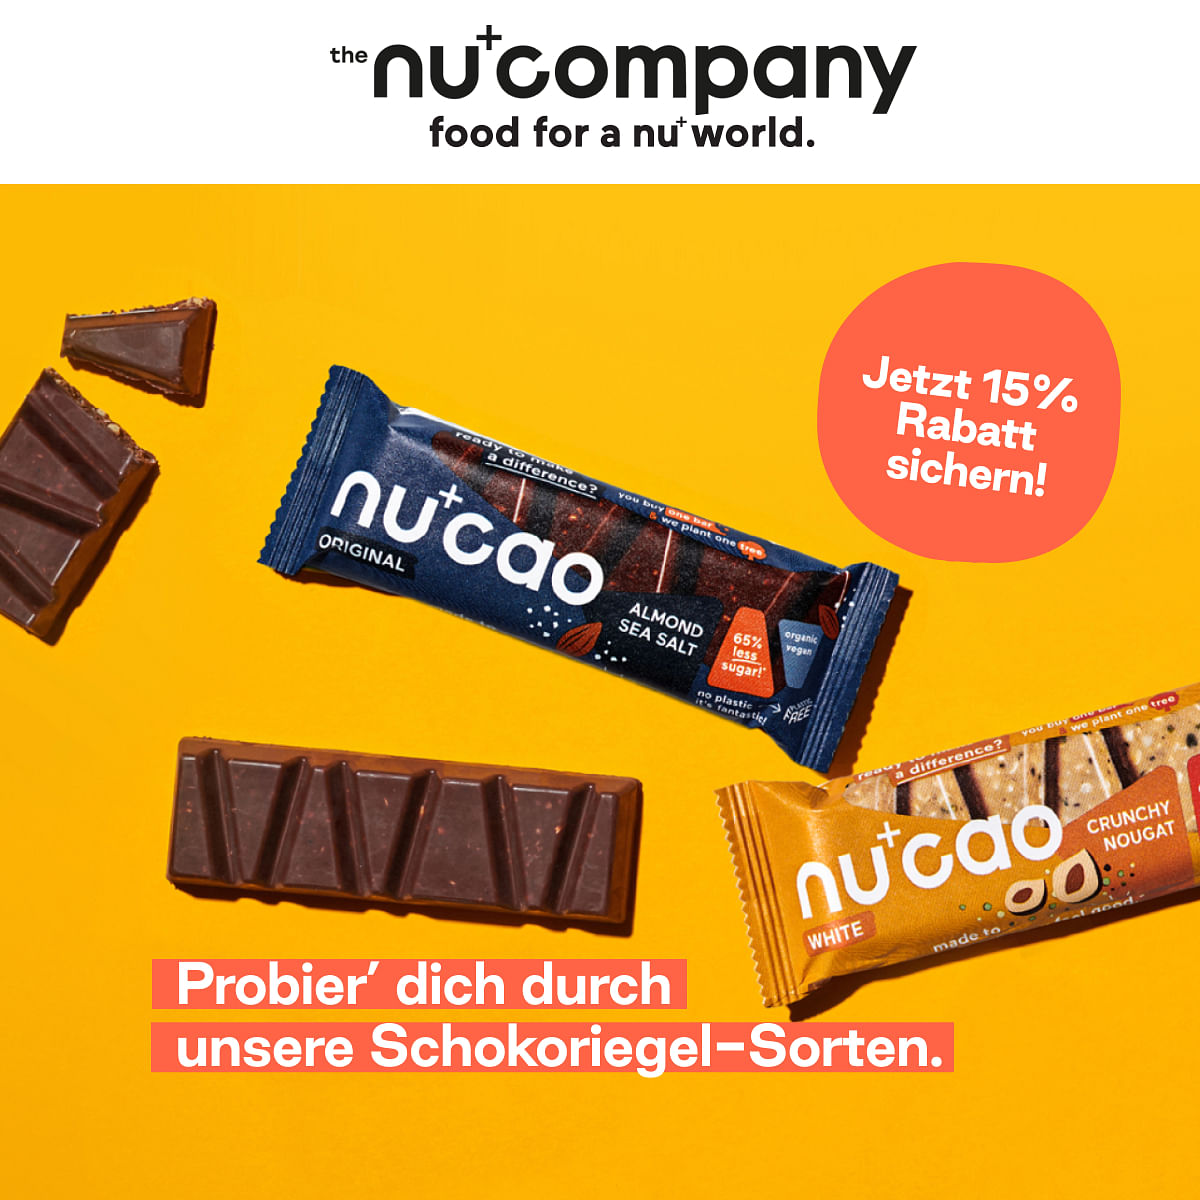 the nu company: Süße Neujahrsvorsätze